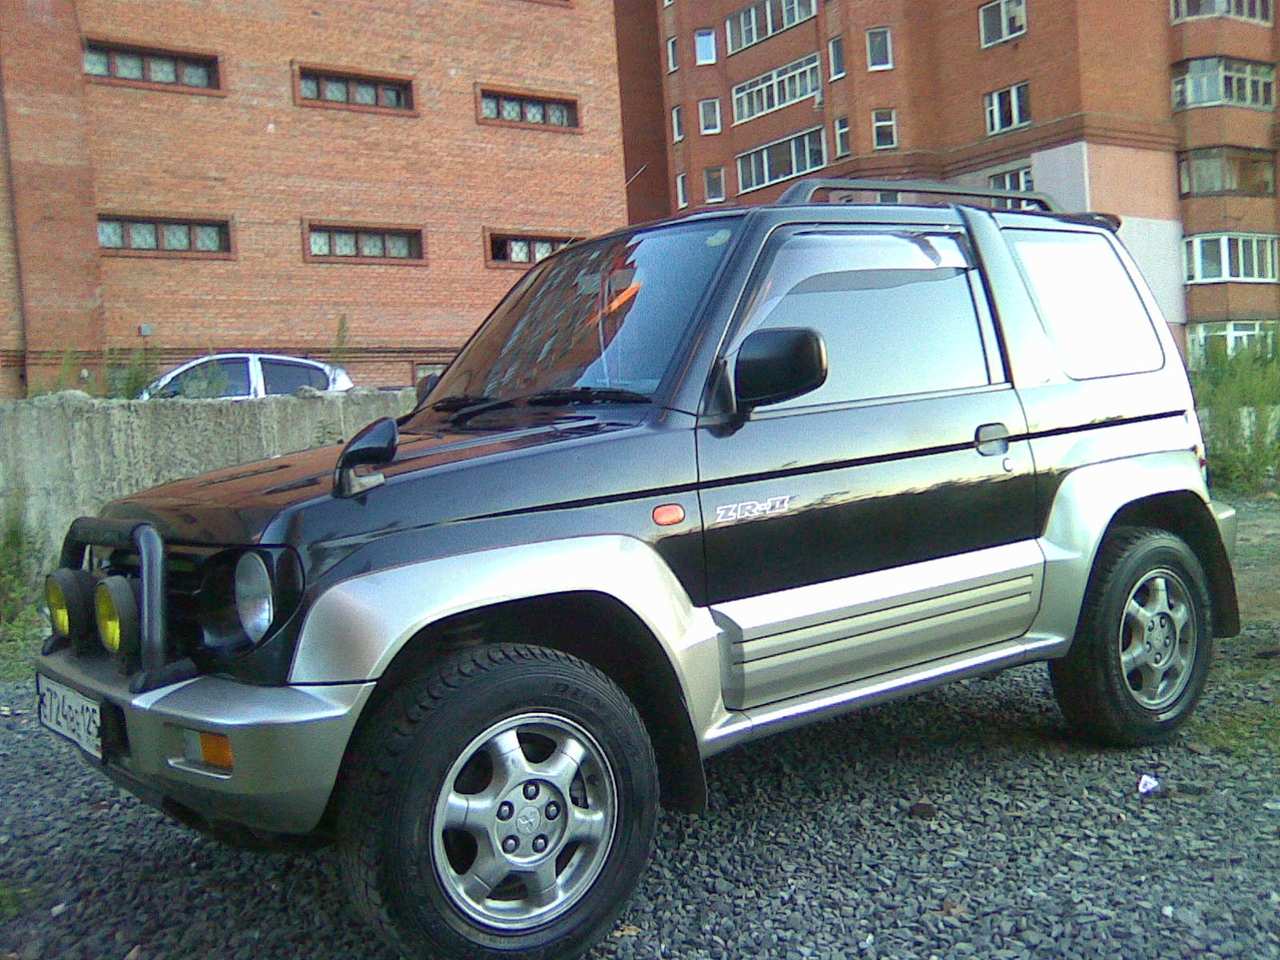 Mitsubishi junior. Митсубиси Паджеро Джуниор. Митсубиси Pajero Junior. Mitsubishi Pajero Jr 1996. Mitsubishi Pajero Junior 1995.